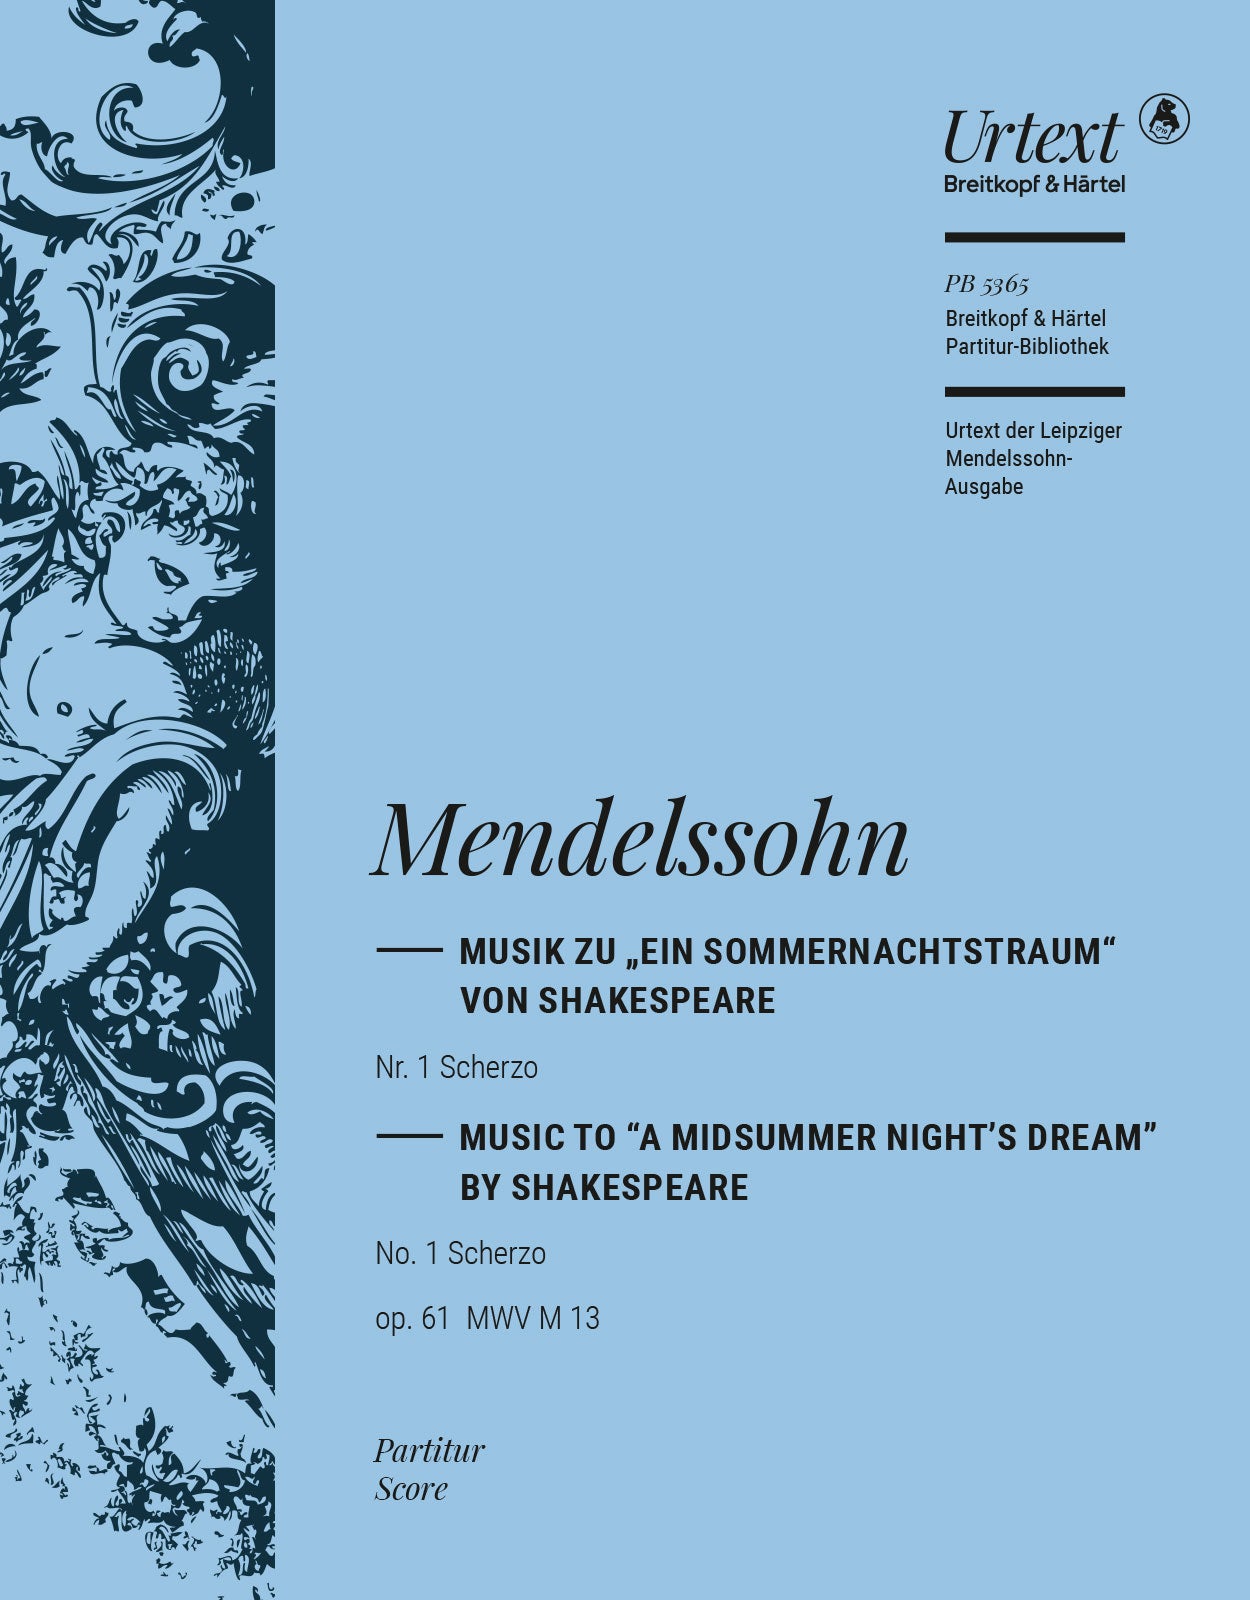 Mendelssohn: Scherzo from A Midsummer Night's Dream, MWV M 13, Op. 61